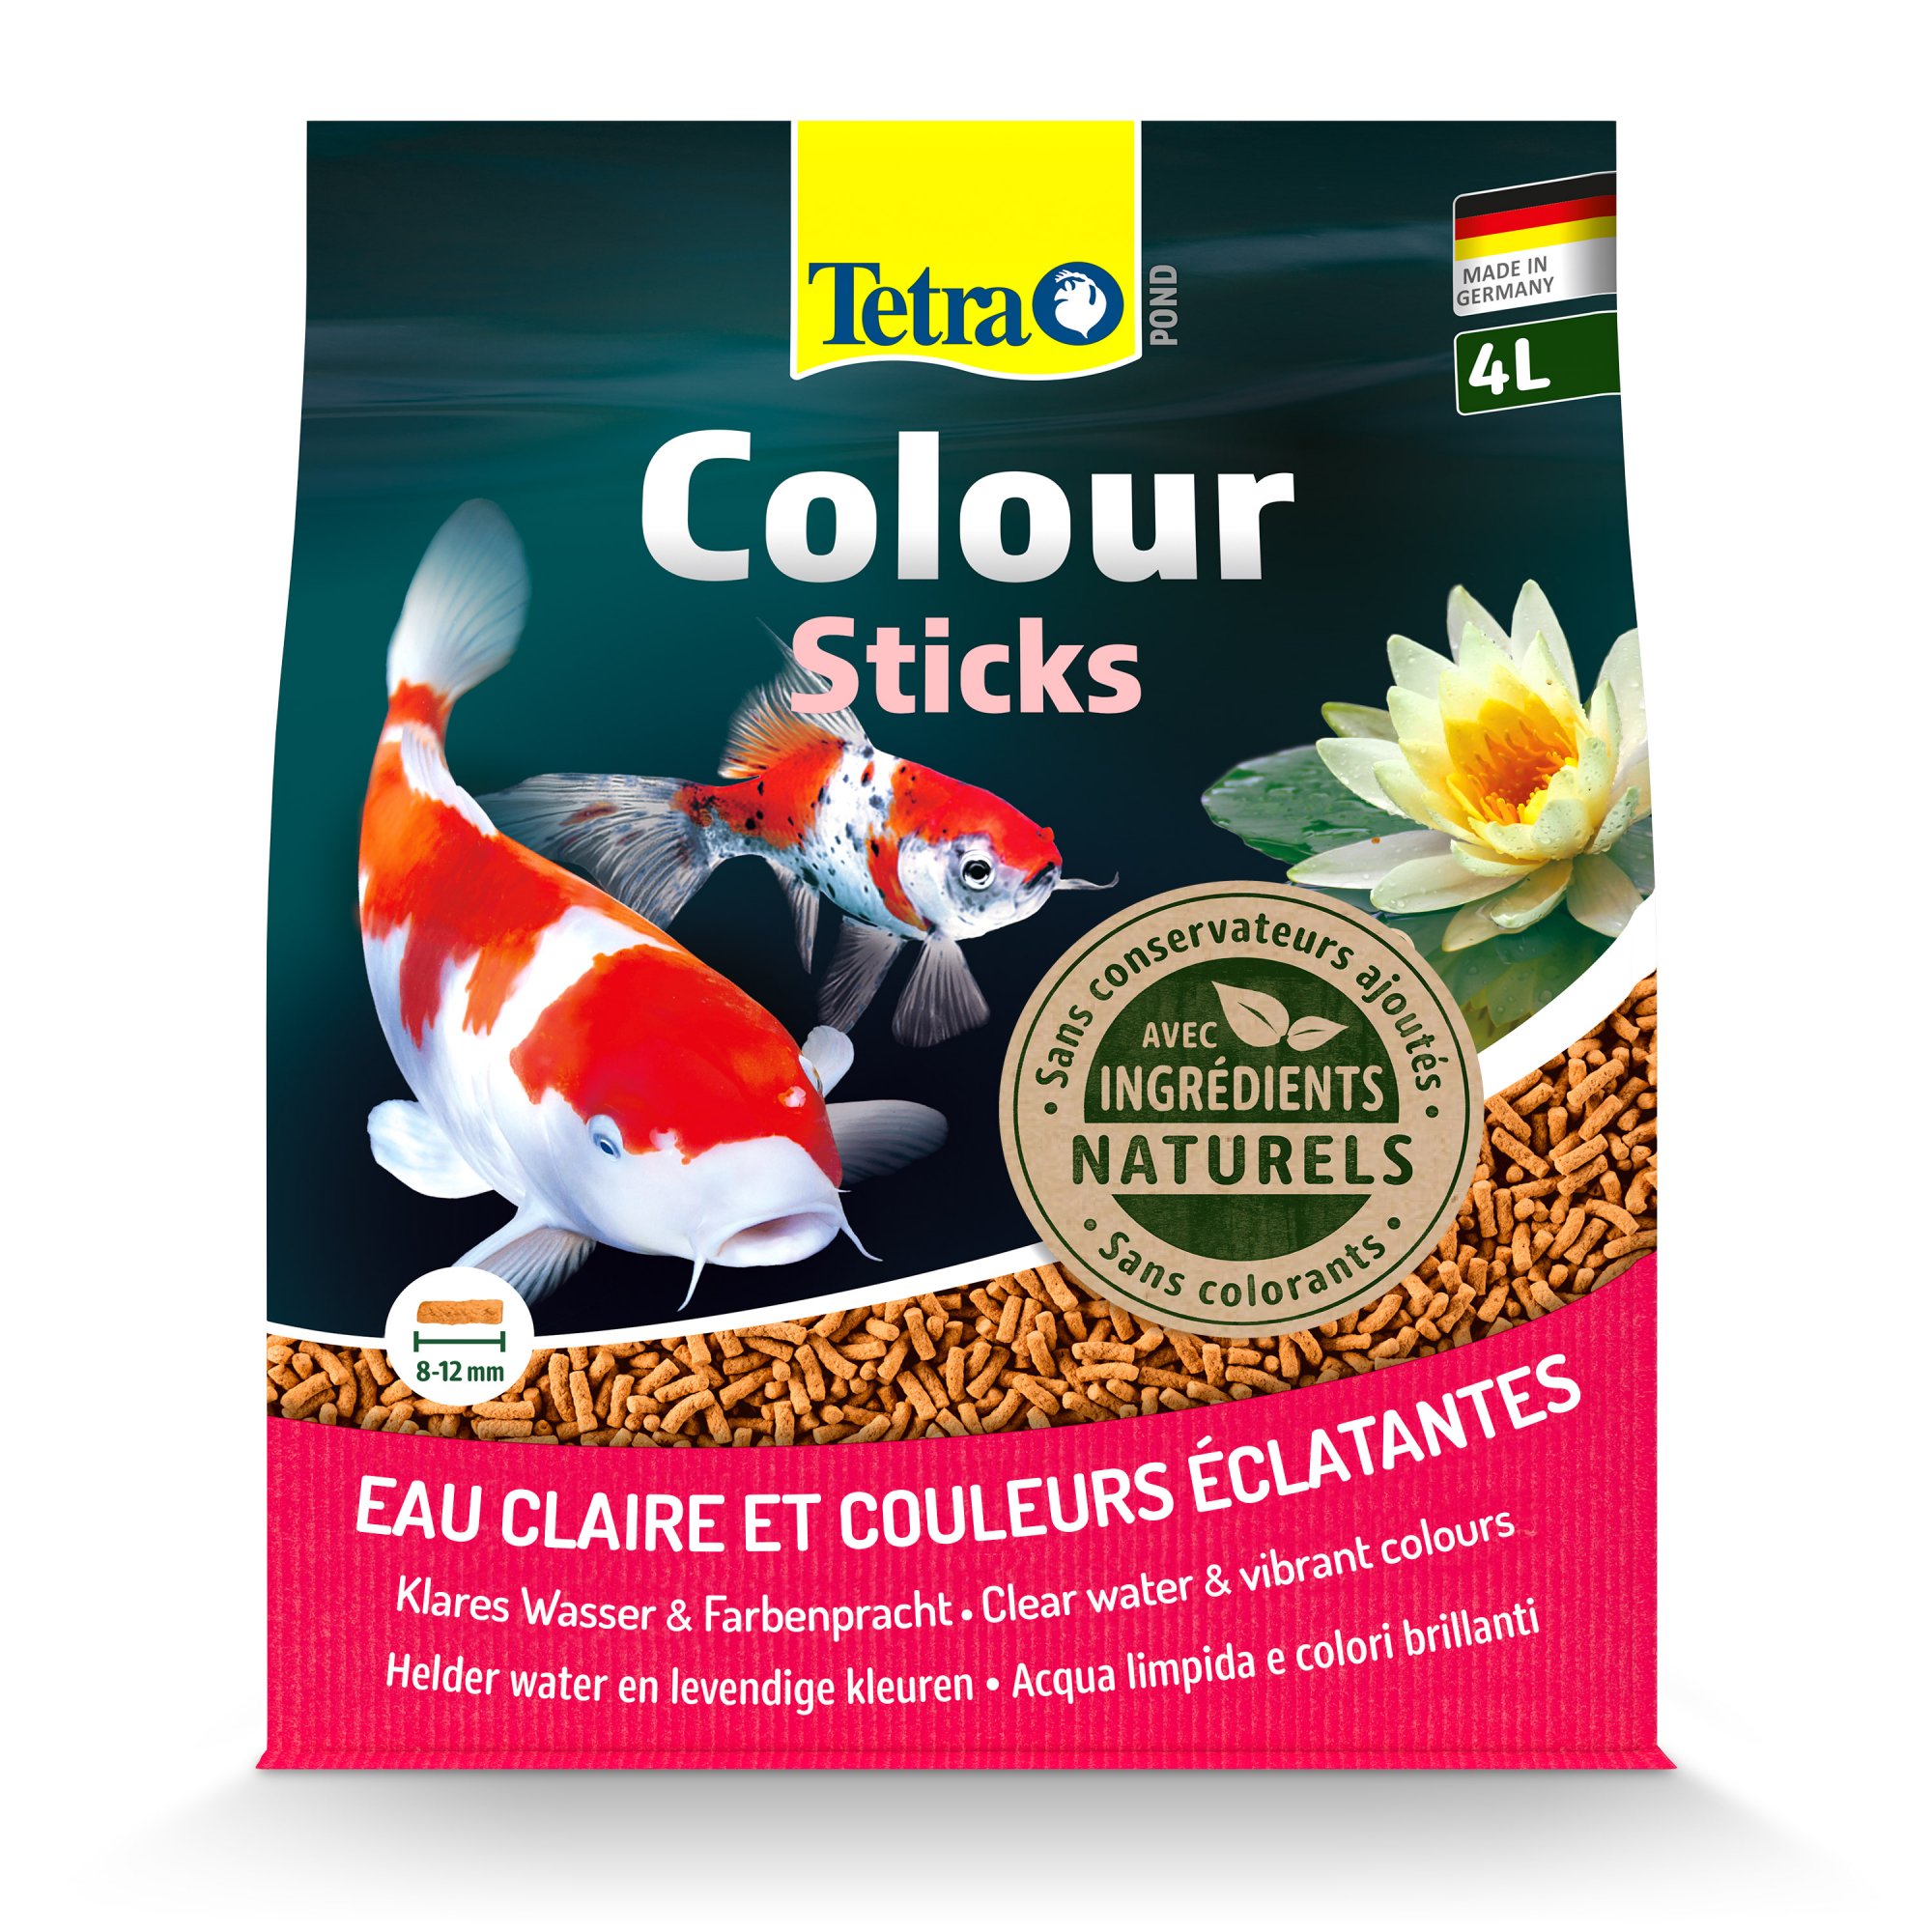 Tetra Pond Colour Sticks Aliment complet pour poissons de bassin aux couleurs éclatantes